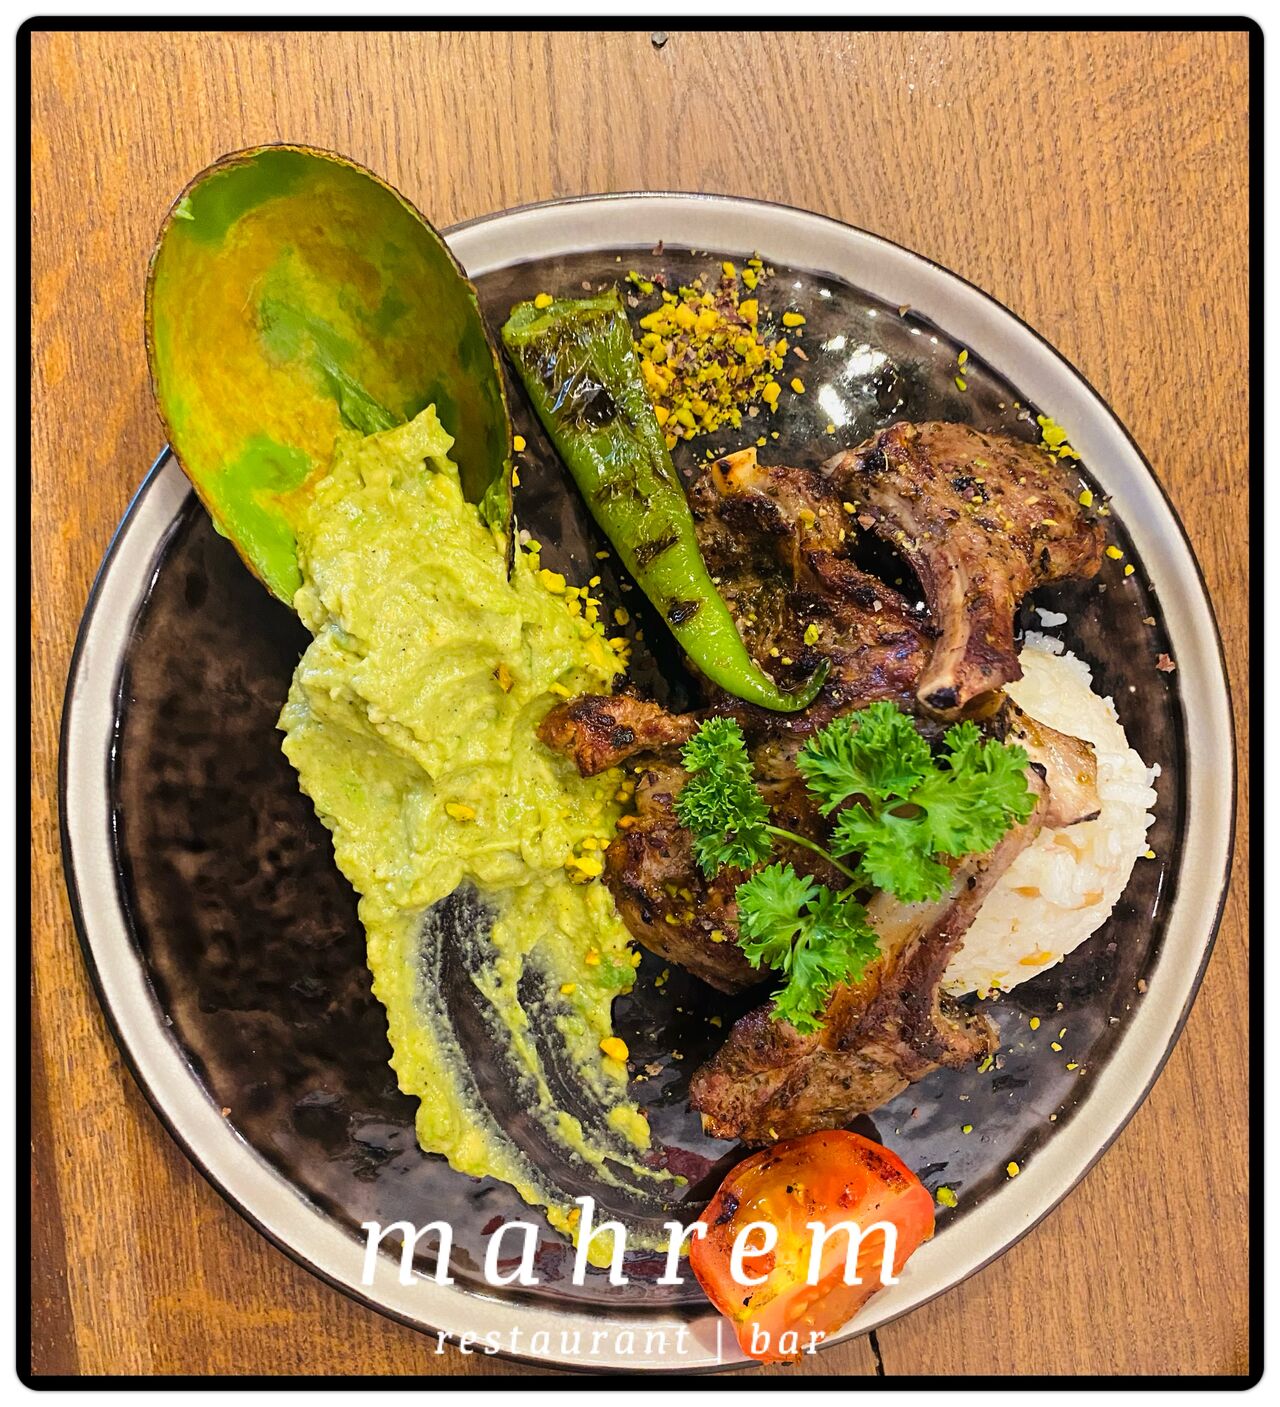 Mahrem-Restaurant-IMG-9170-jpg